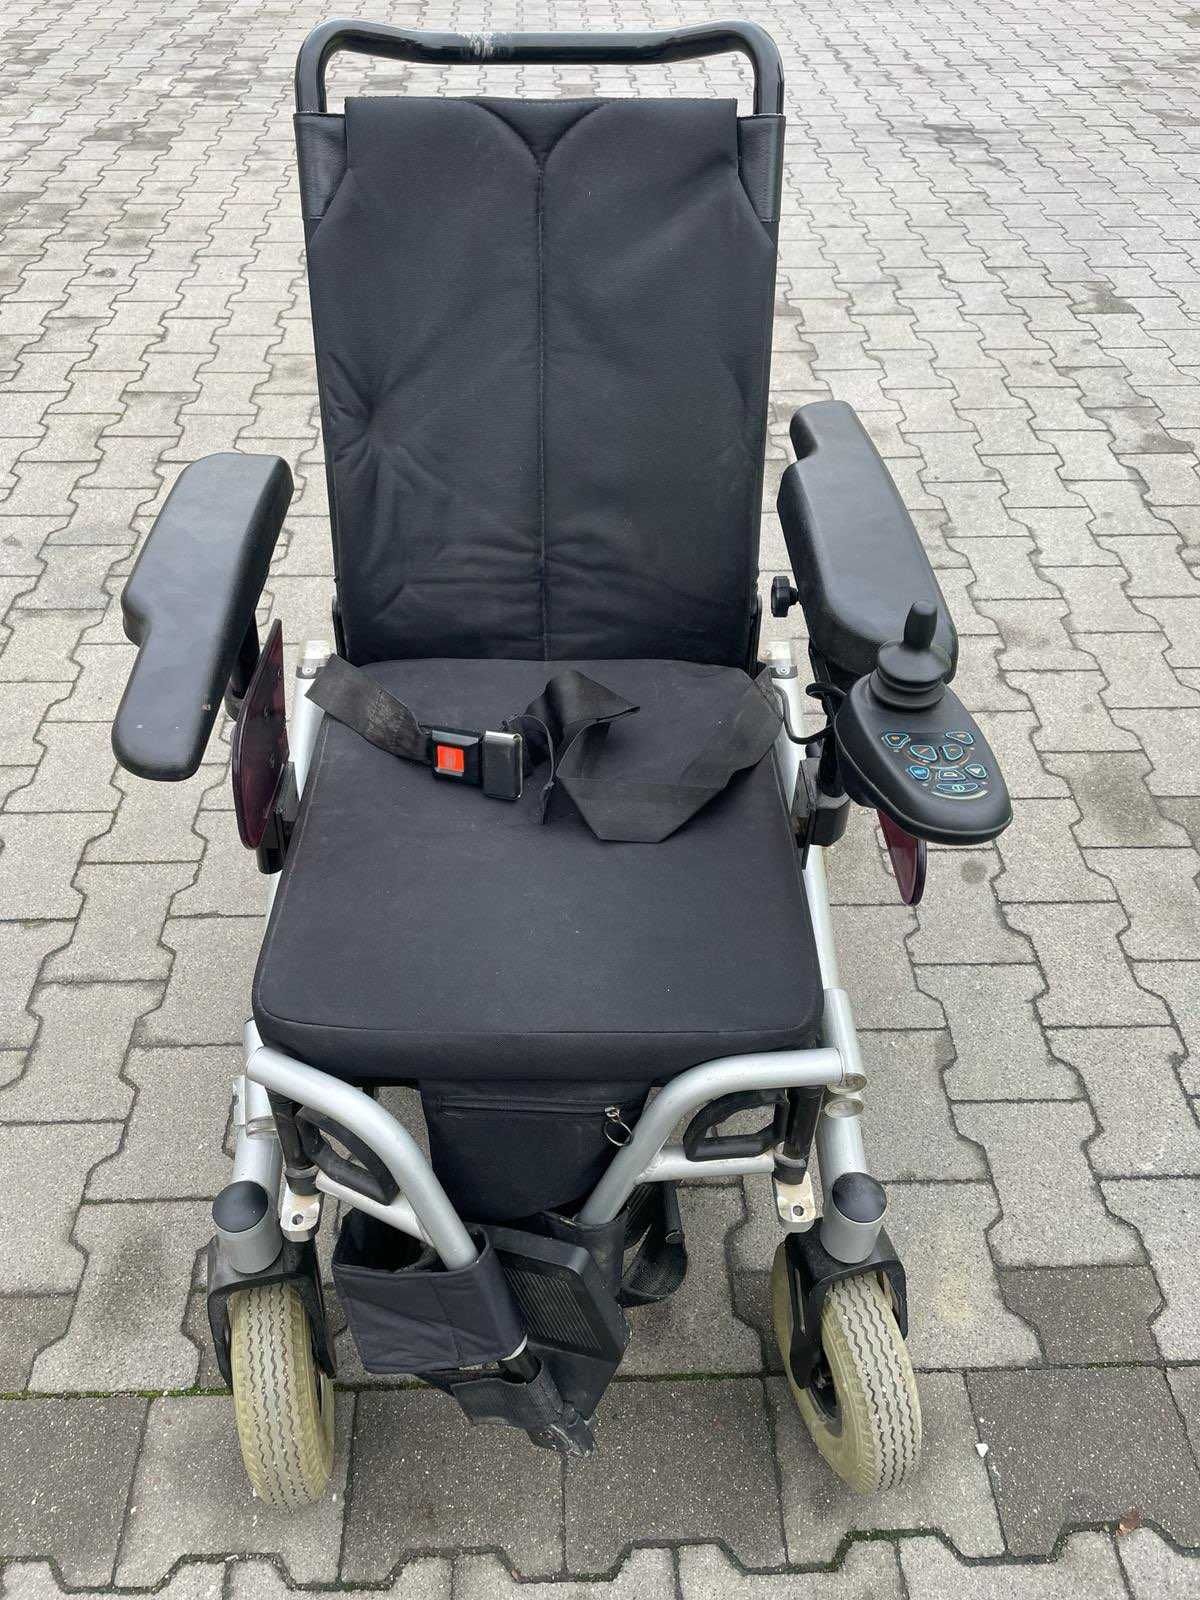 Sprzedam wózek inwalidzki firmy Bischoff & Bischoff model 8351